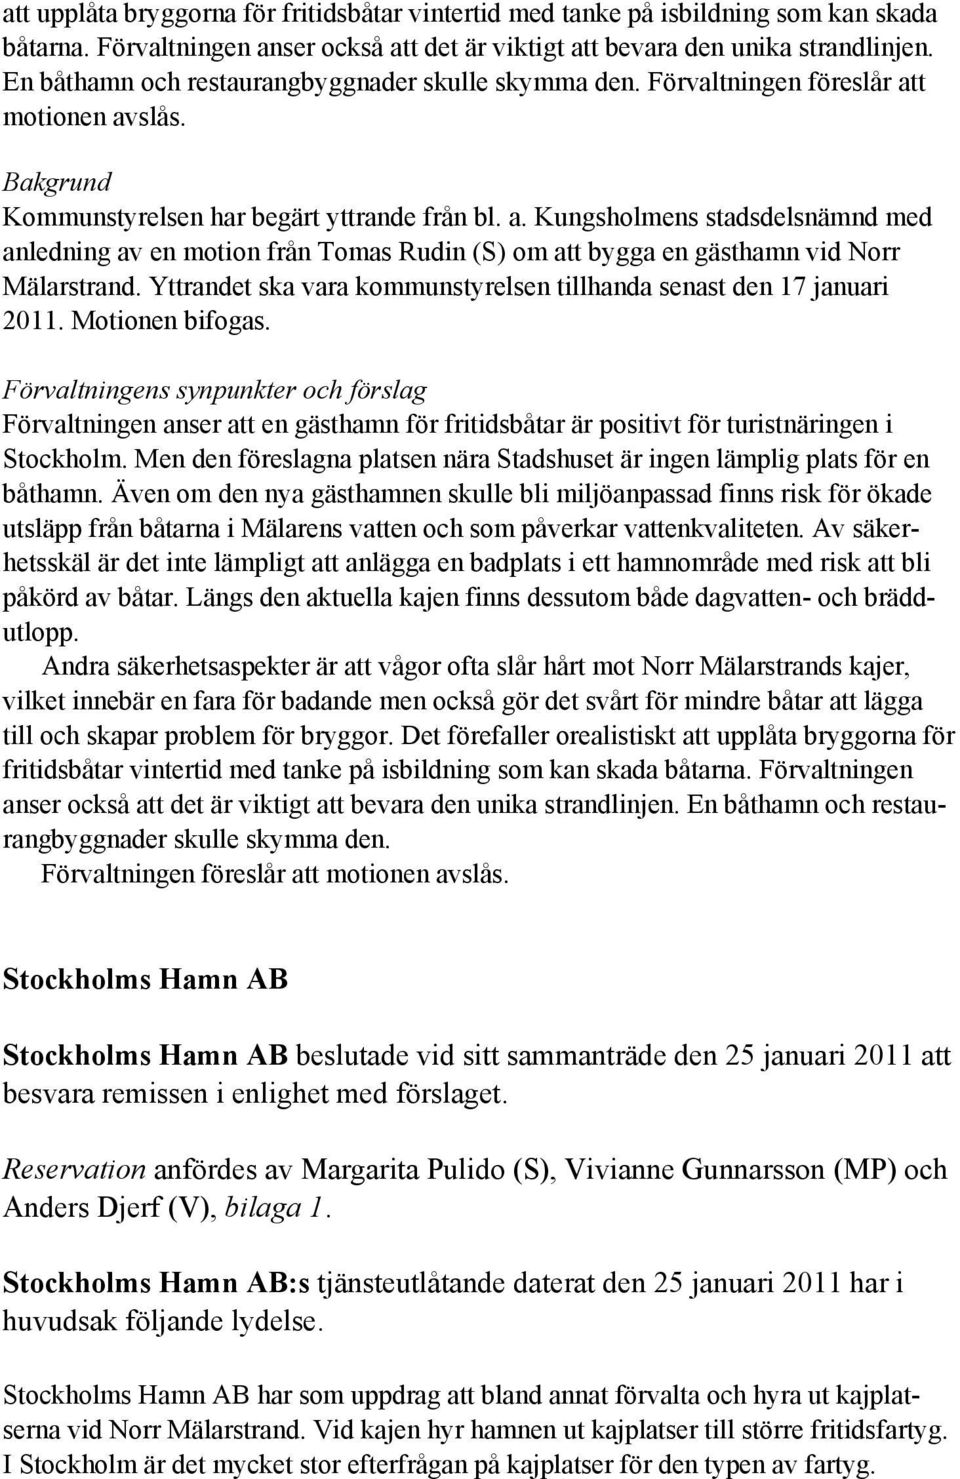 t motionen avslås. Bakgrund Kommunstyrelsen har begärt yttrande från bl. a. Kungsholmens stadsdelsnämnd med anledning av en motion från Tomas Rudin (S) om att bygga en gästhamn vid Norr Mälarstrand.